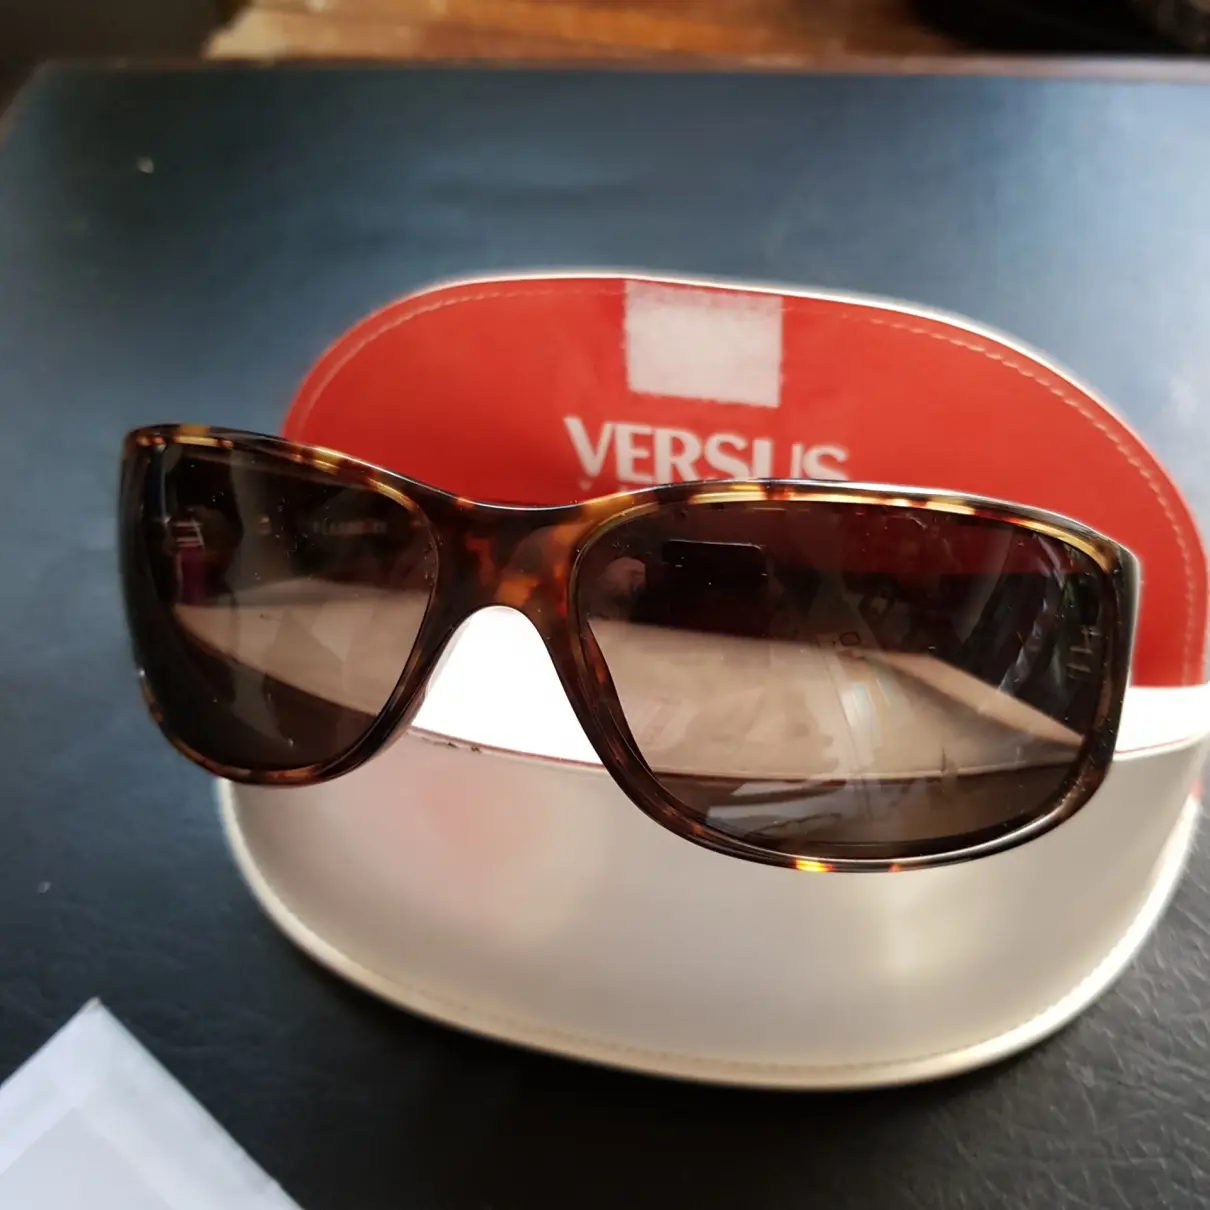 Buy Versus Sunglasses online - Vintage